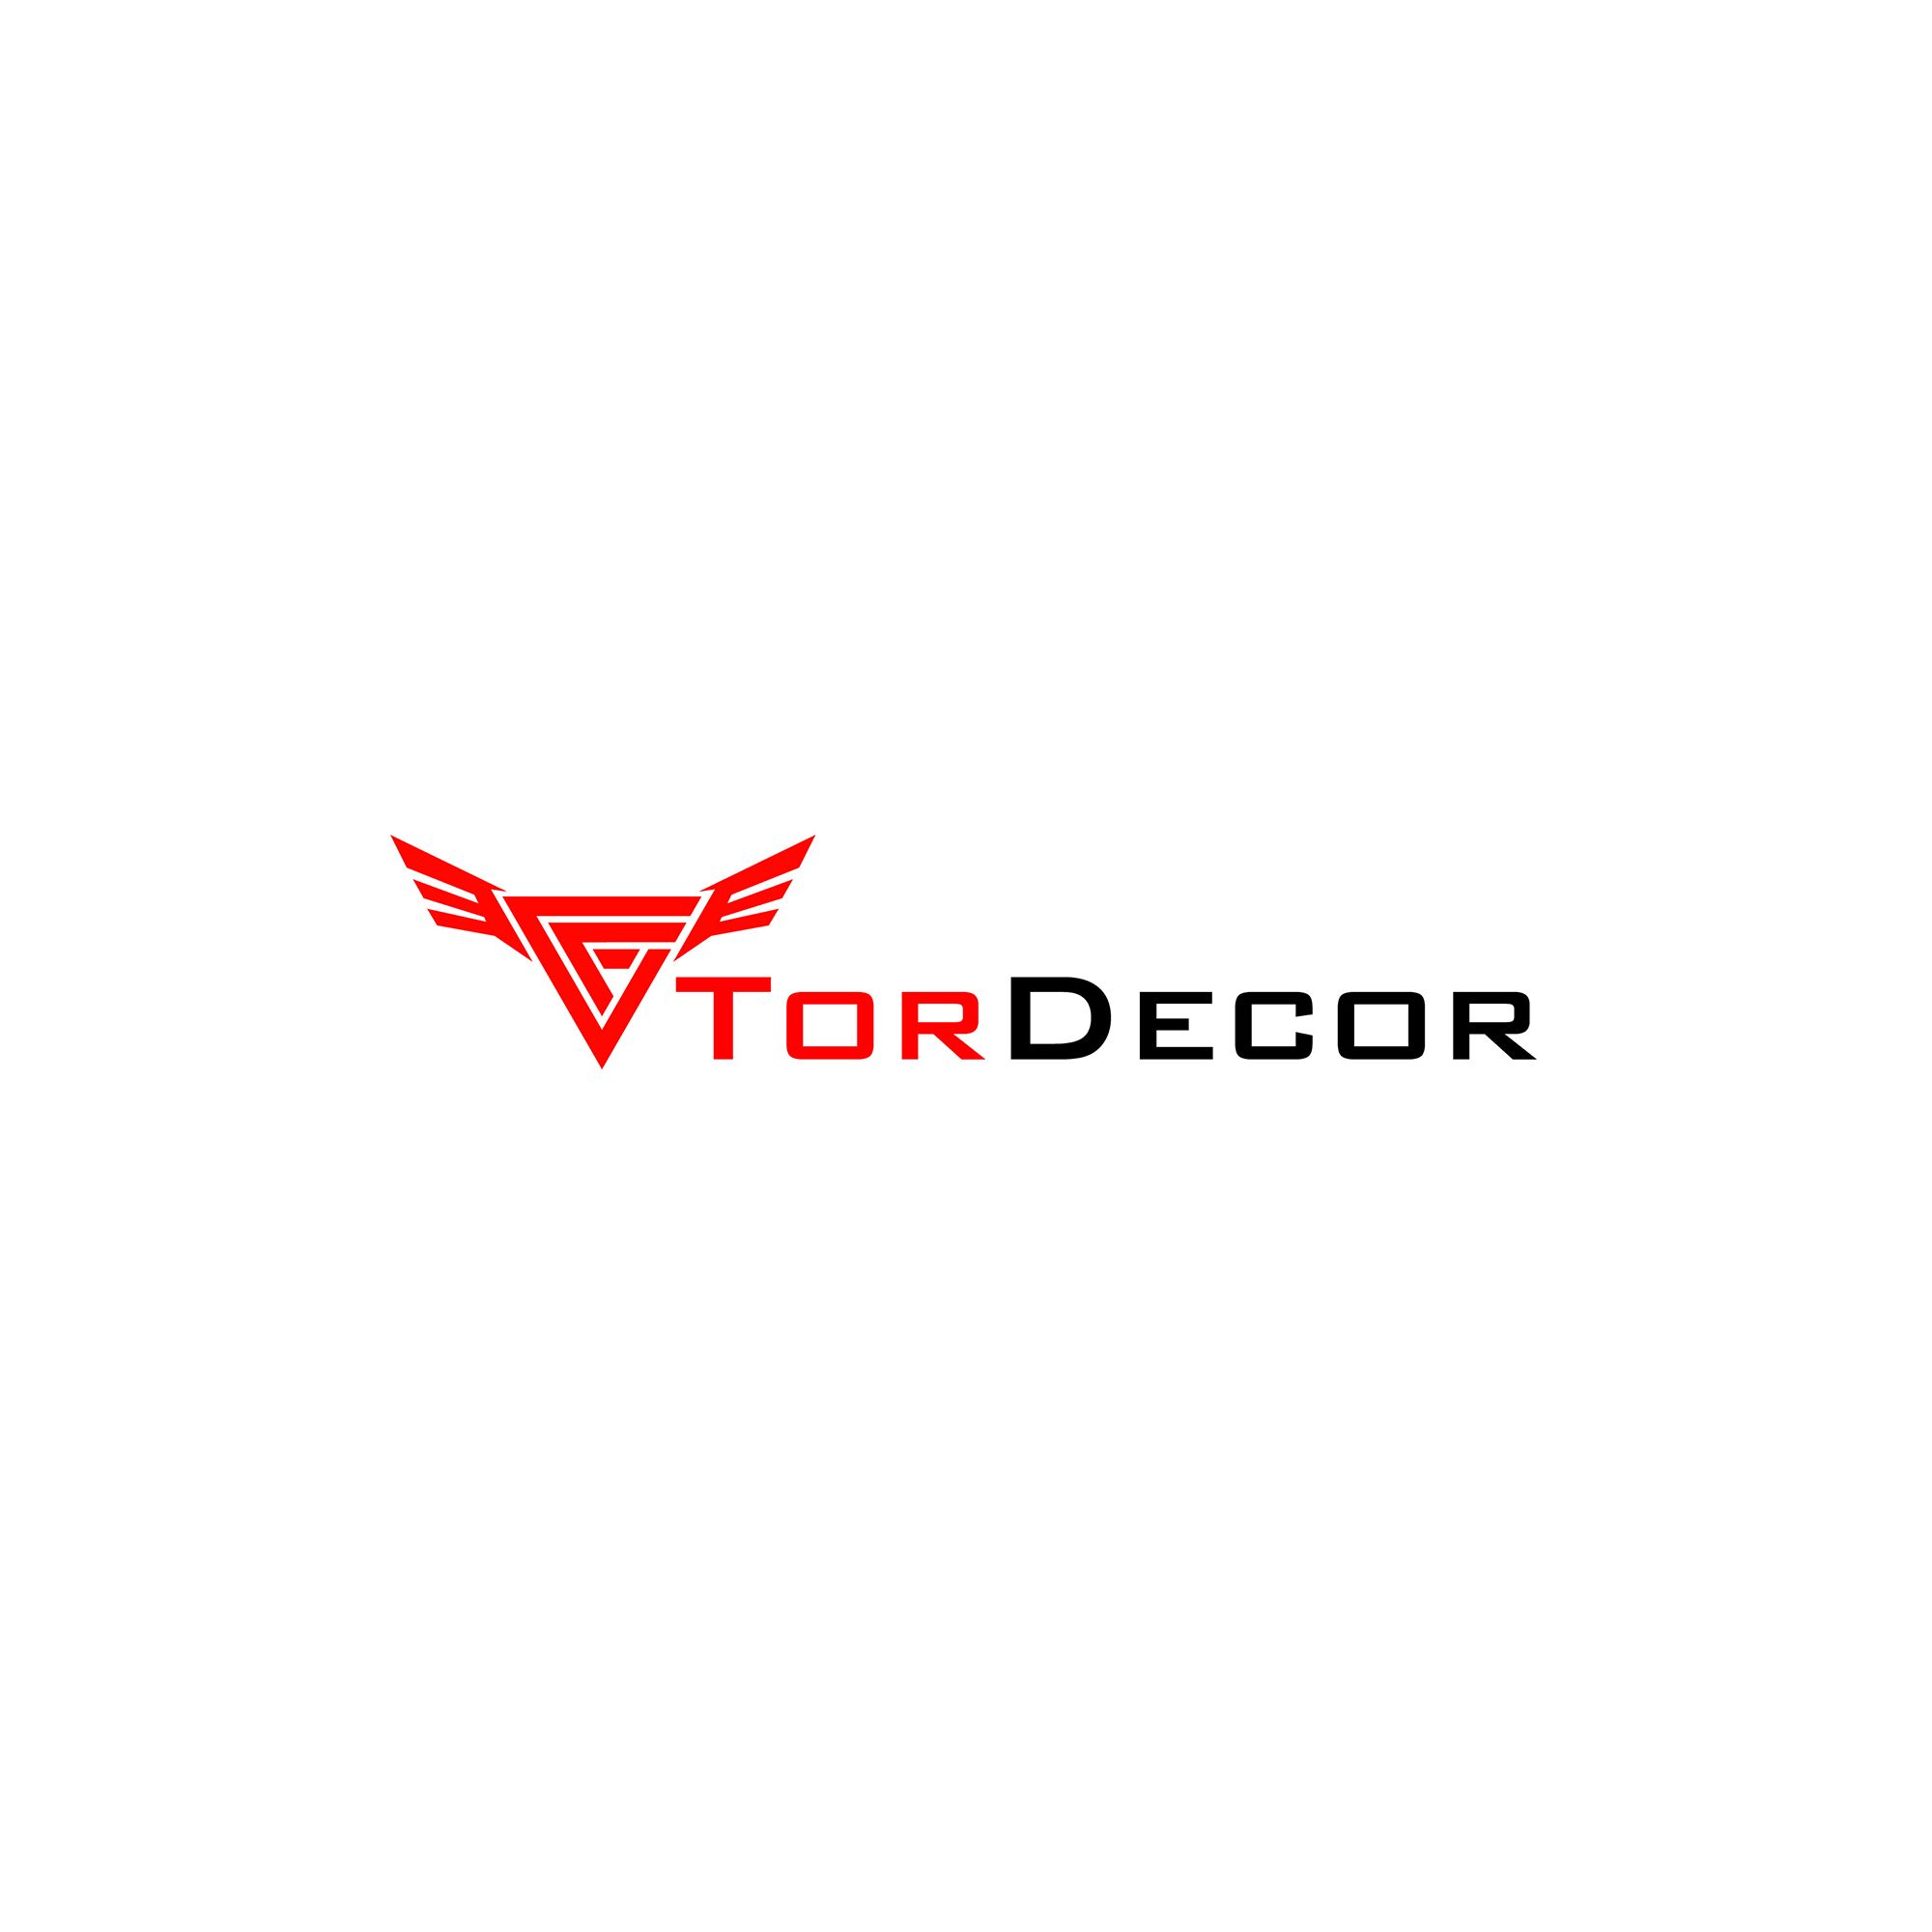 Фирм. стиль и логотип для Tor Decor - дизайнер olka_sova